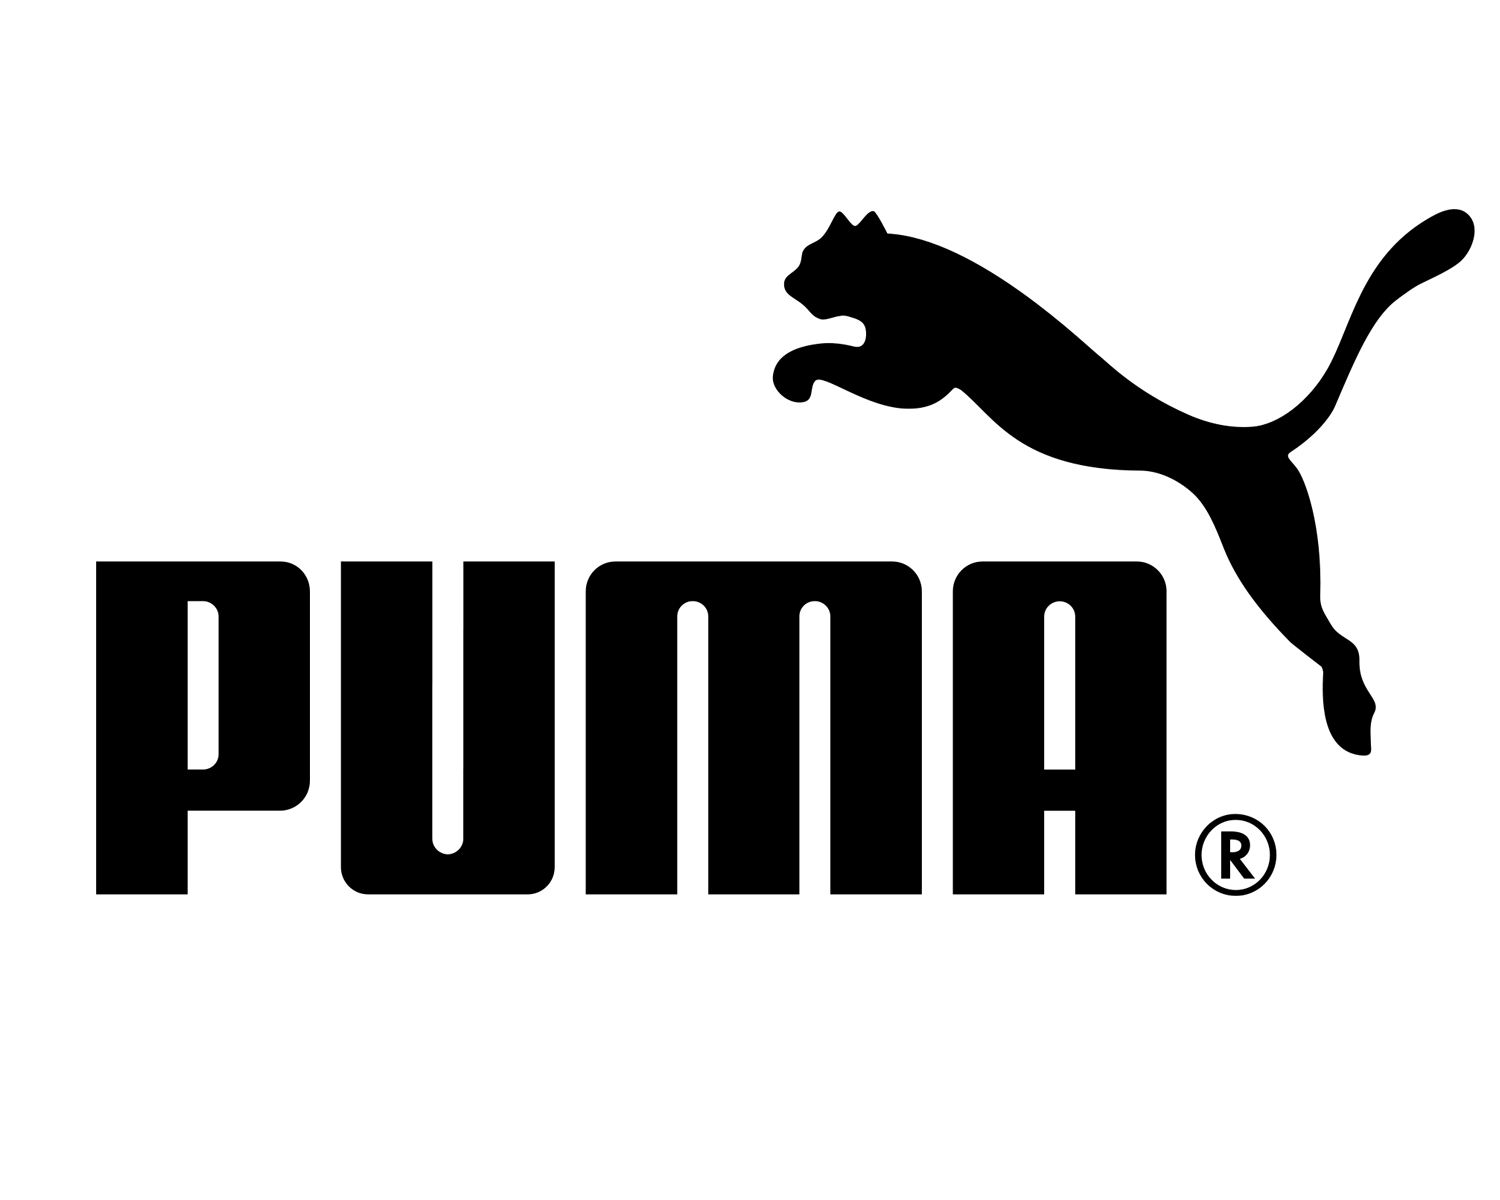 Logotipo Puma PNG transparente - StickPNG